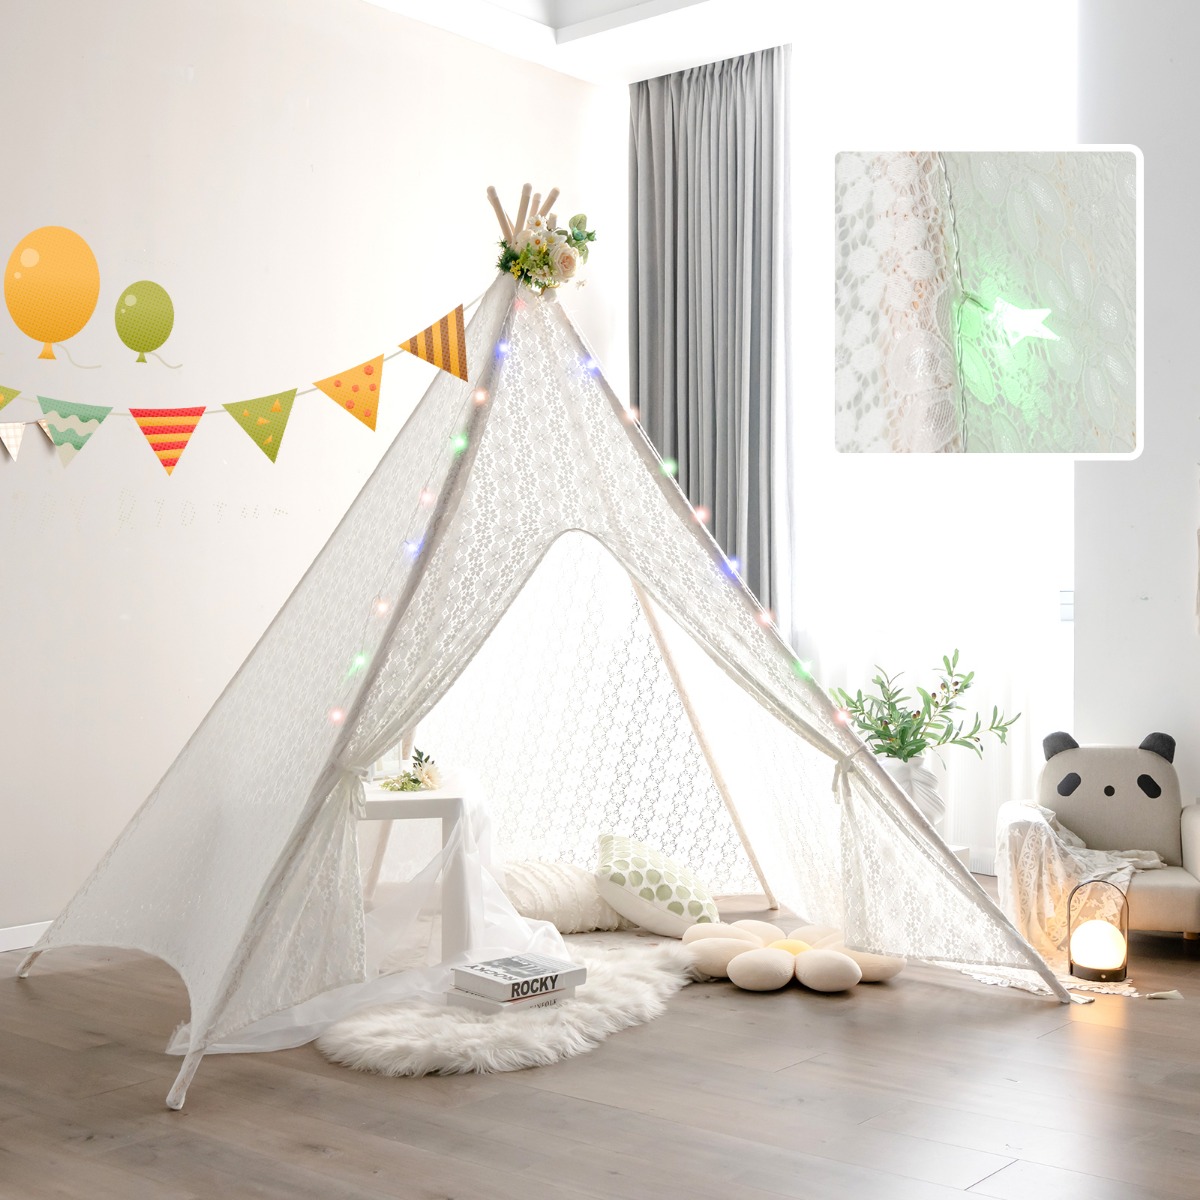 Tipi-Tent Speeltent Kanten Kindertent met Kleurrijke Lichtkettingen 120 x 120 x 140 cm Wit